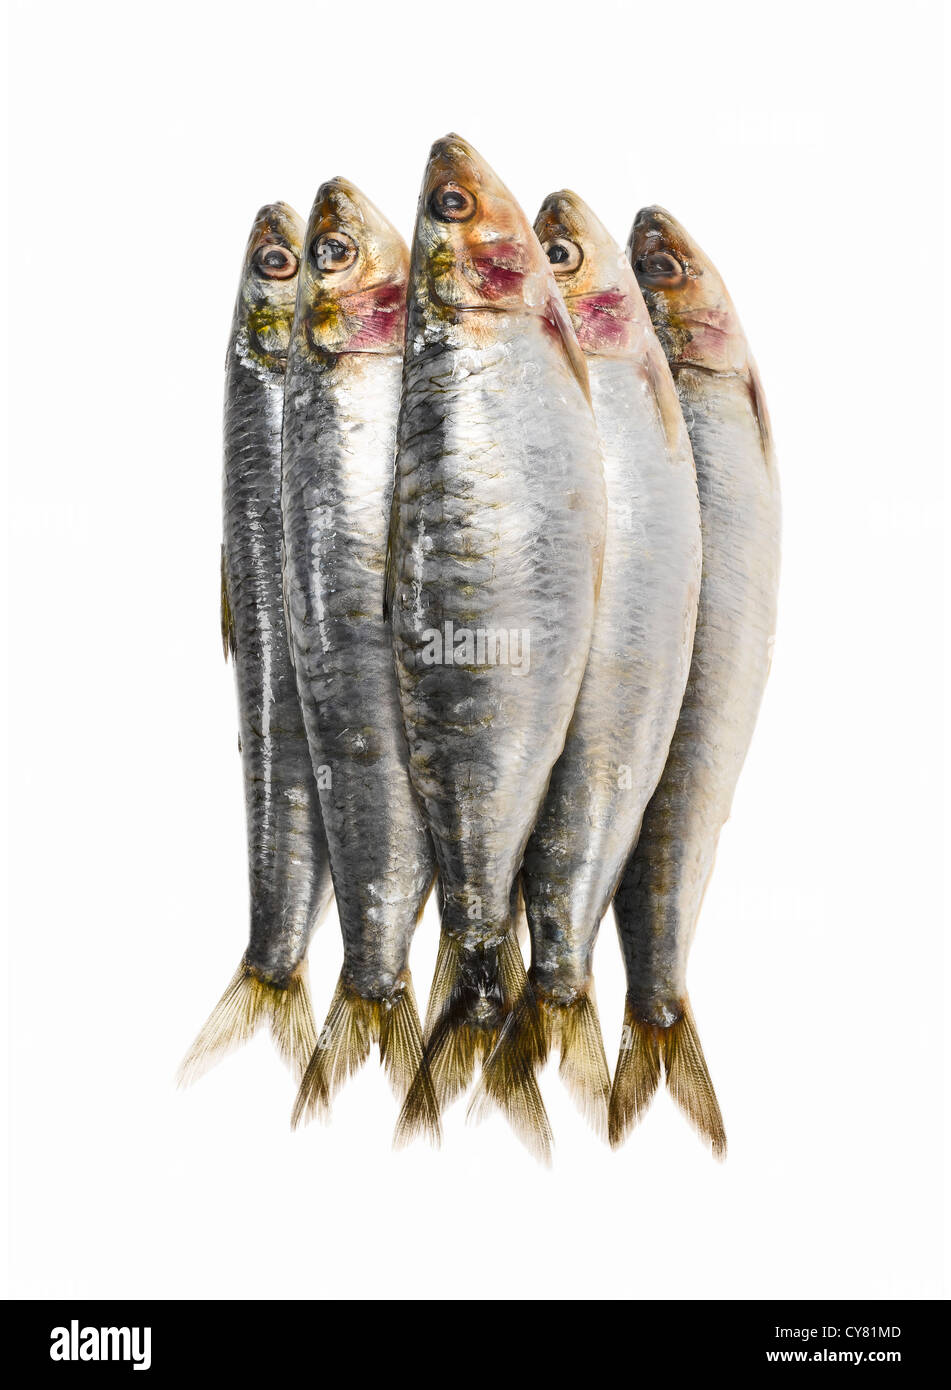 Las sardinas frescas apiladas Foto de stock